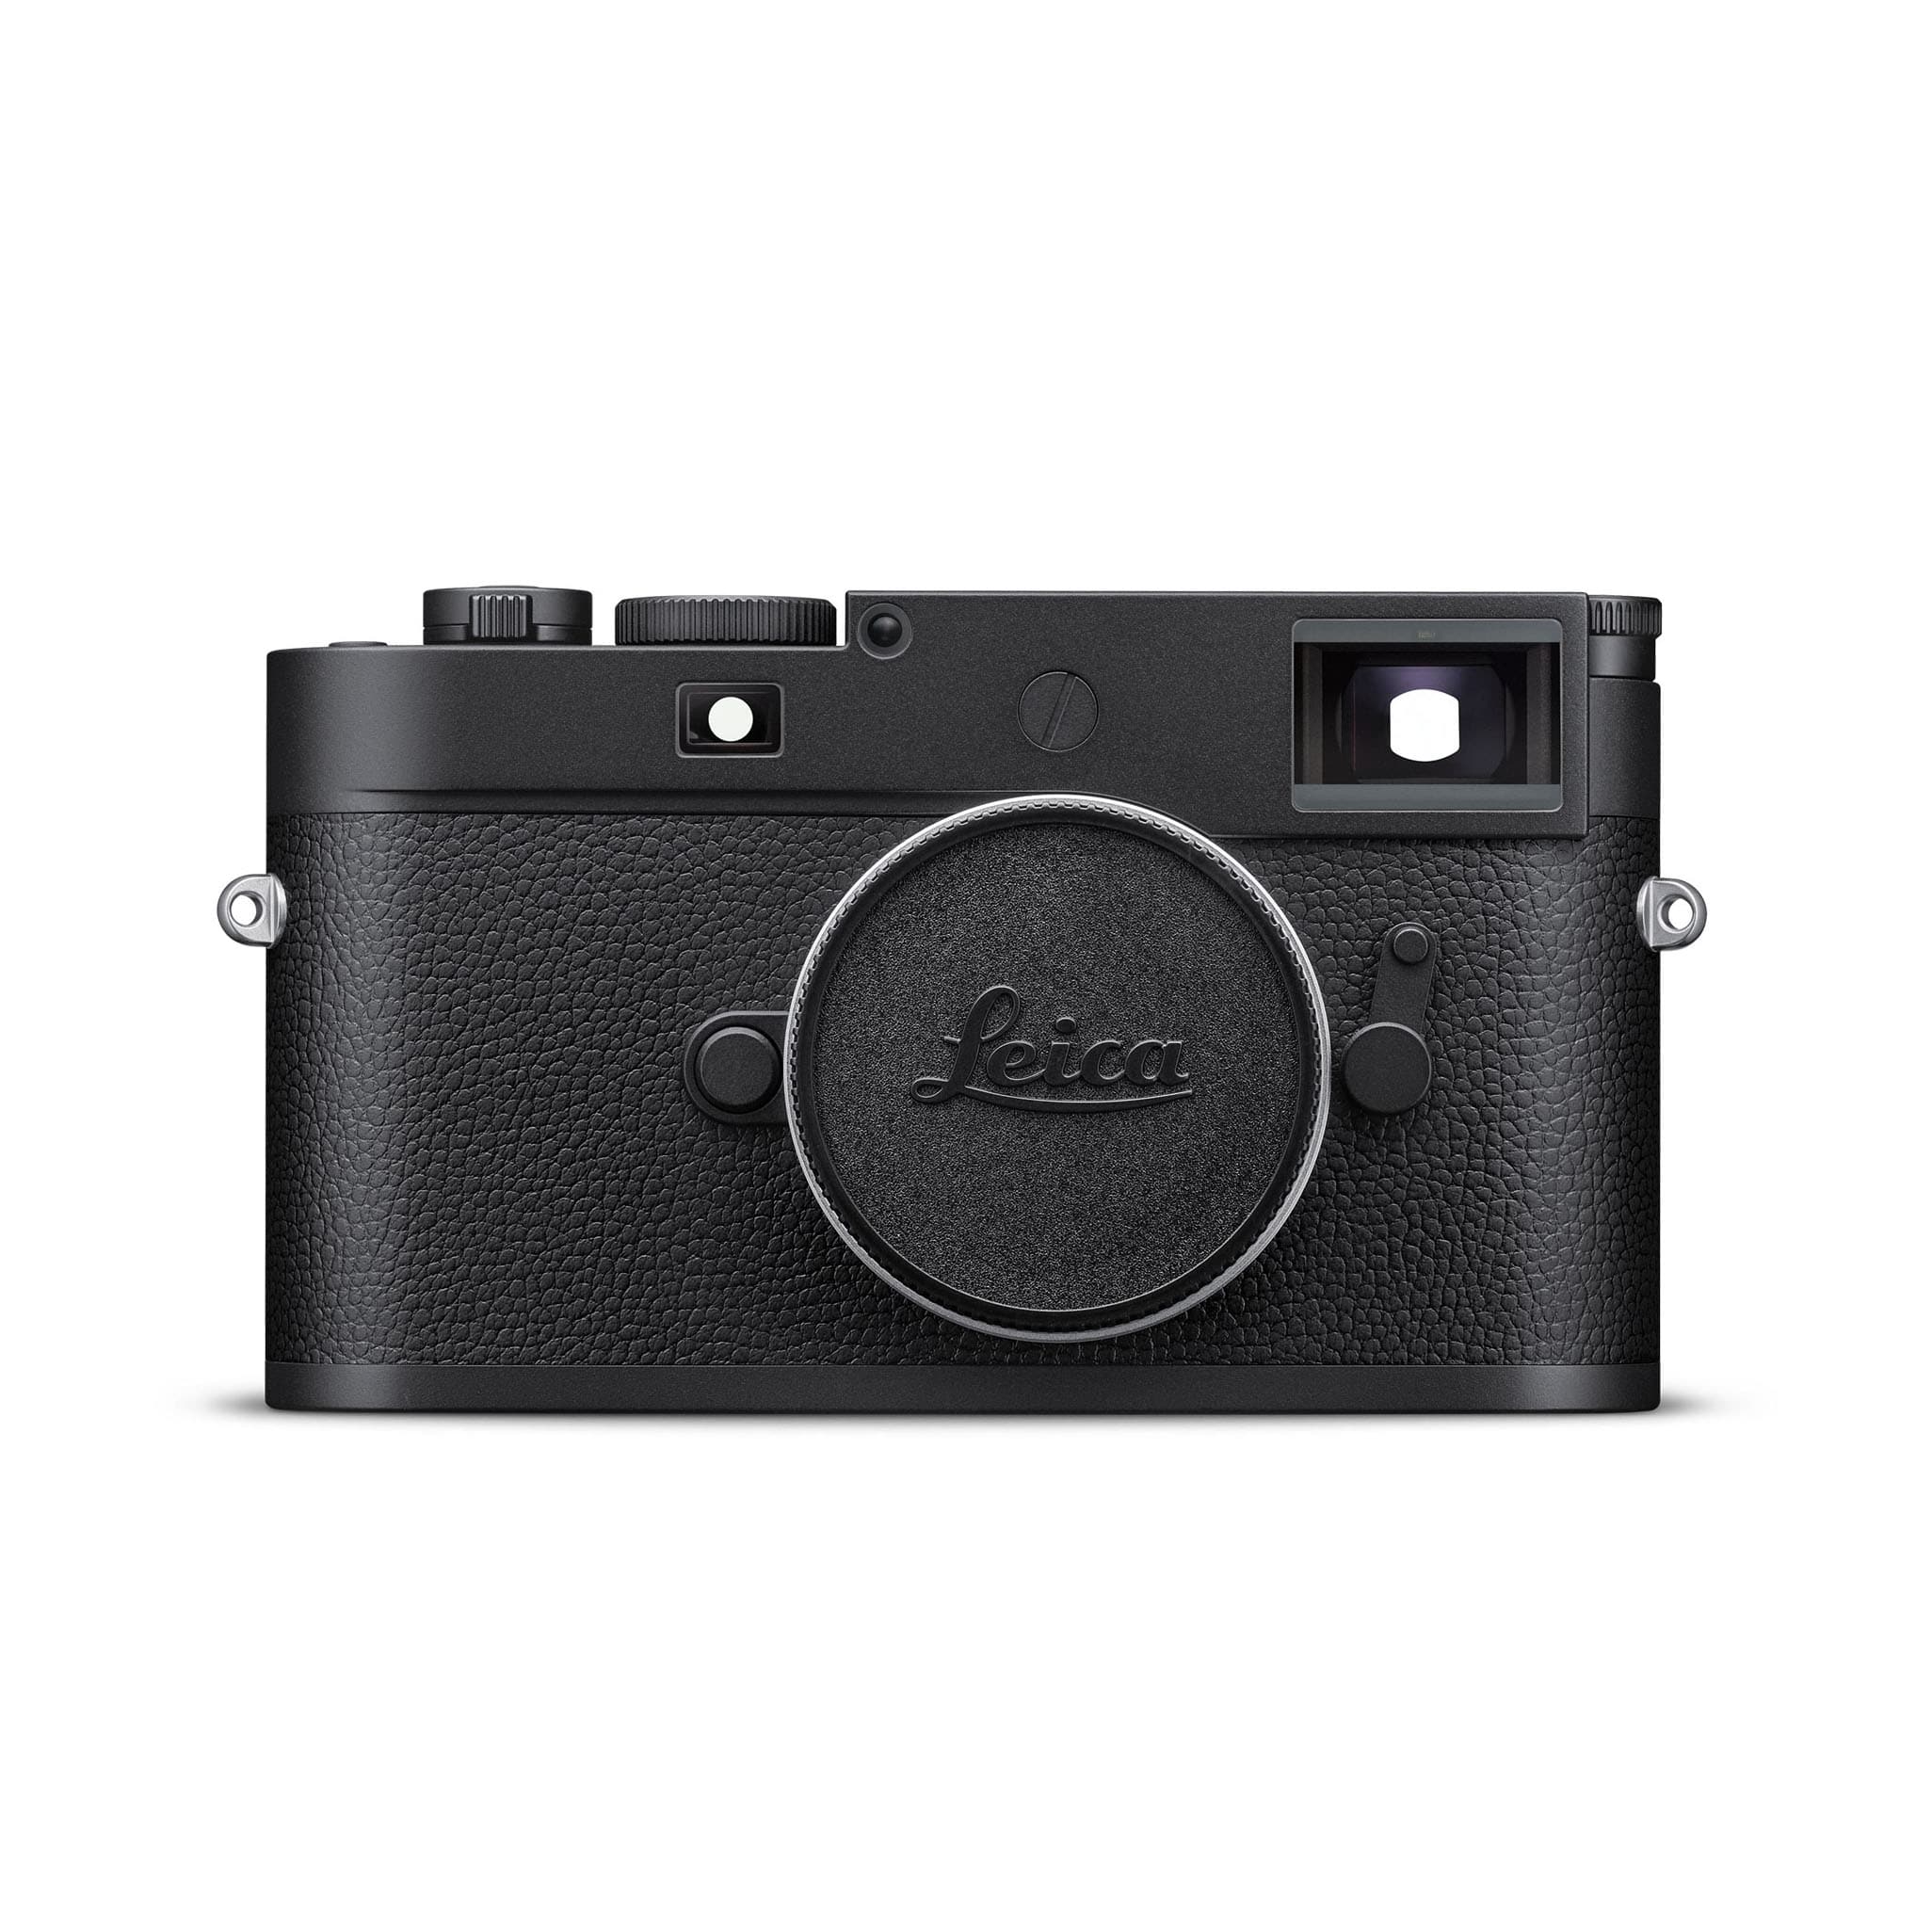 Leica(ライカ) Q3 コンパクトデジタルカメラ 19081(Q3 ボディ): カメラ